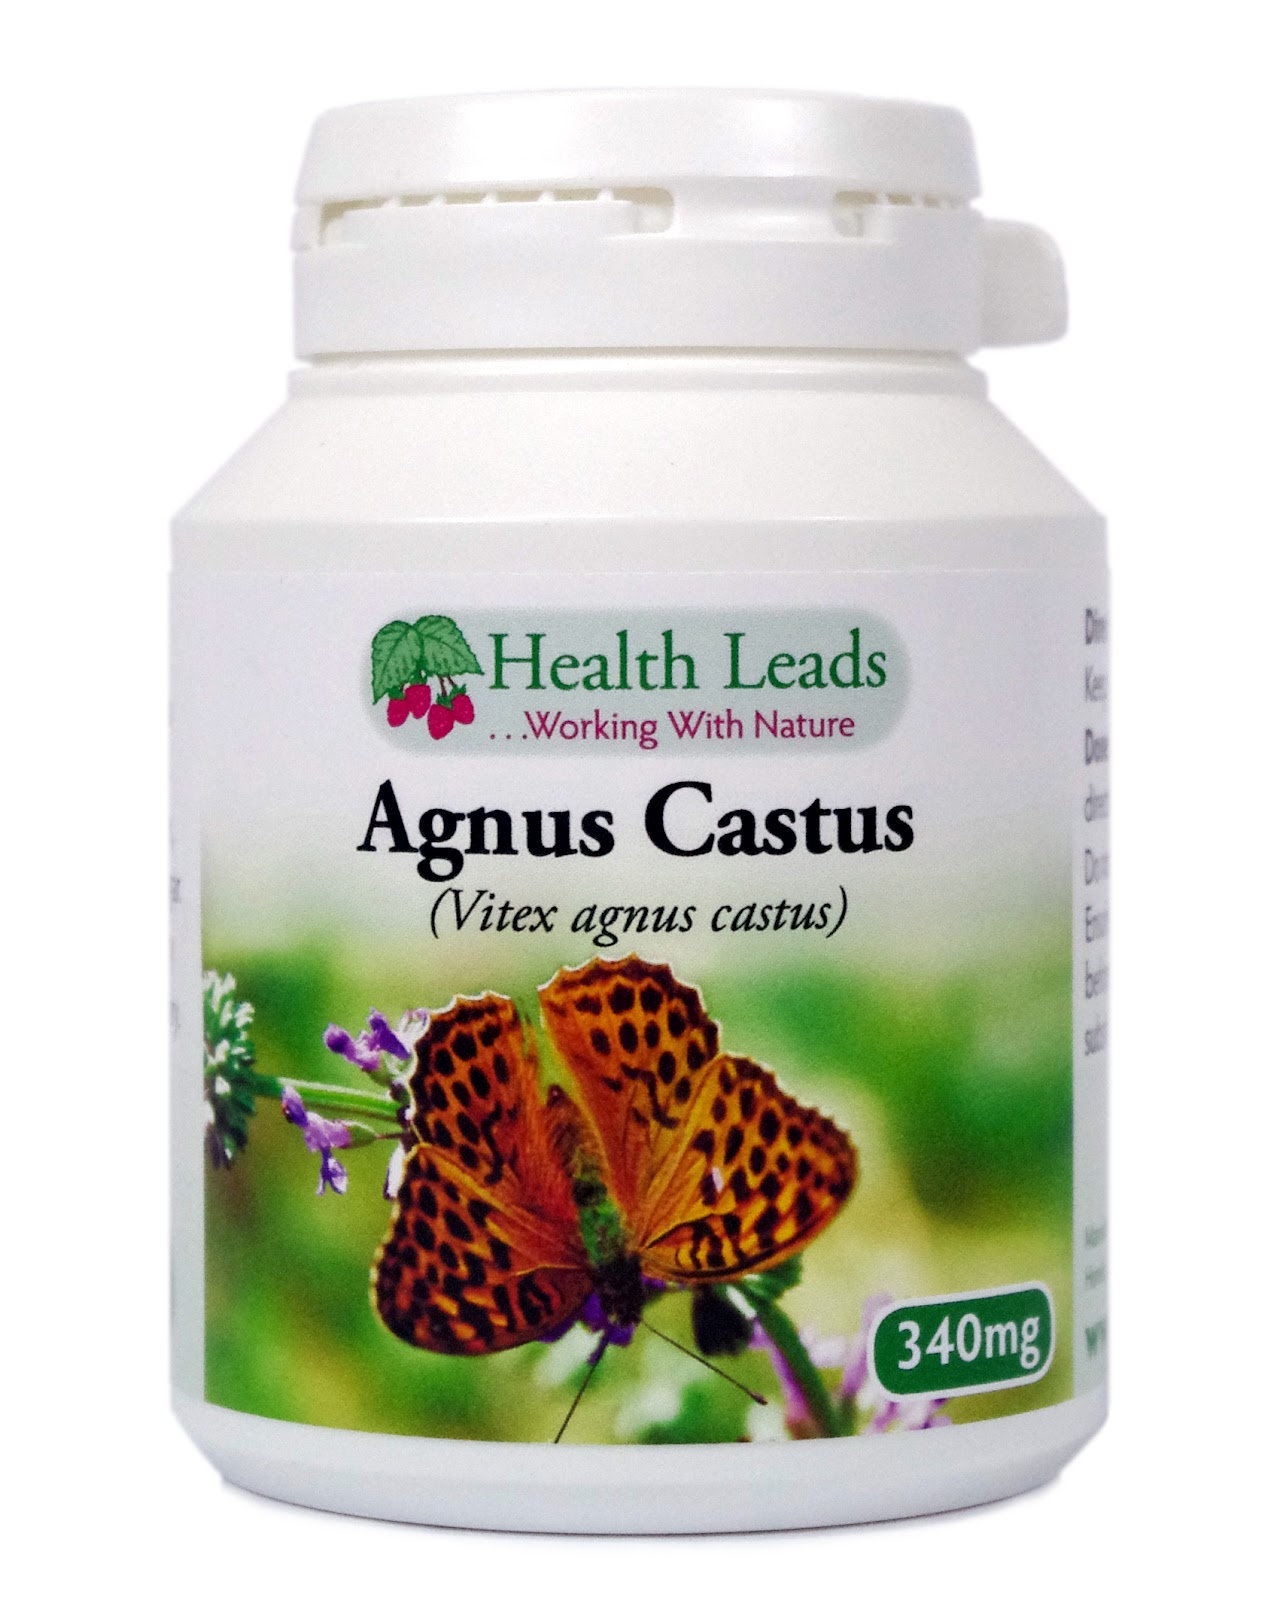 Benefits of Agnus Castus